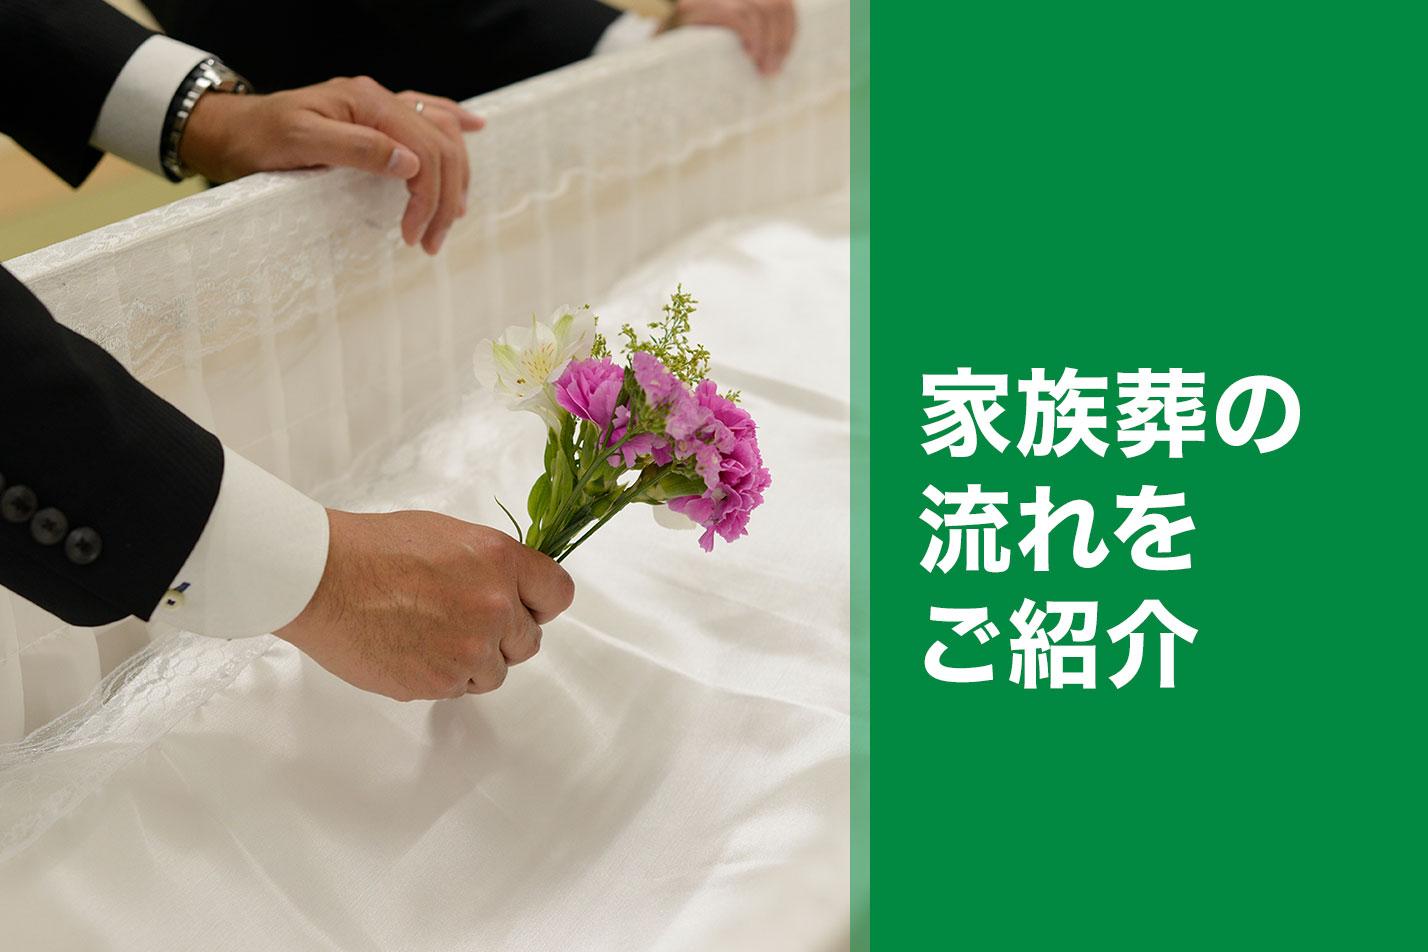 掛川市における家族葬の流れとは？のイメージ画像